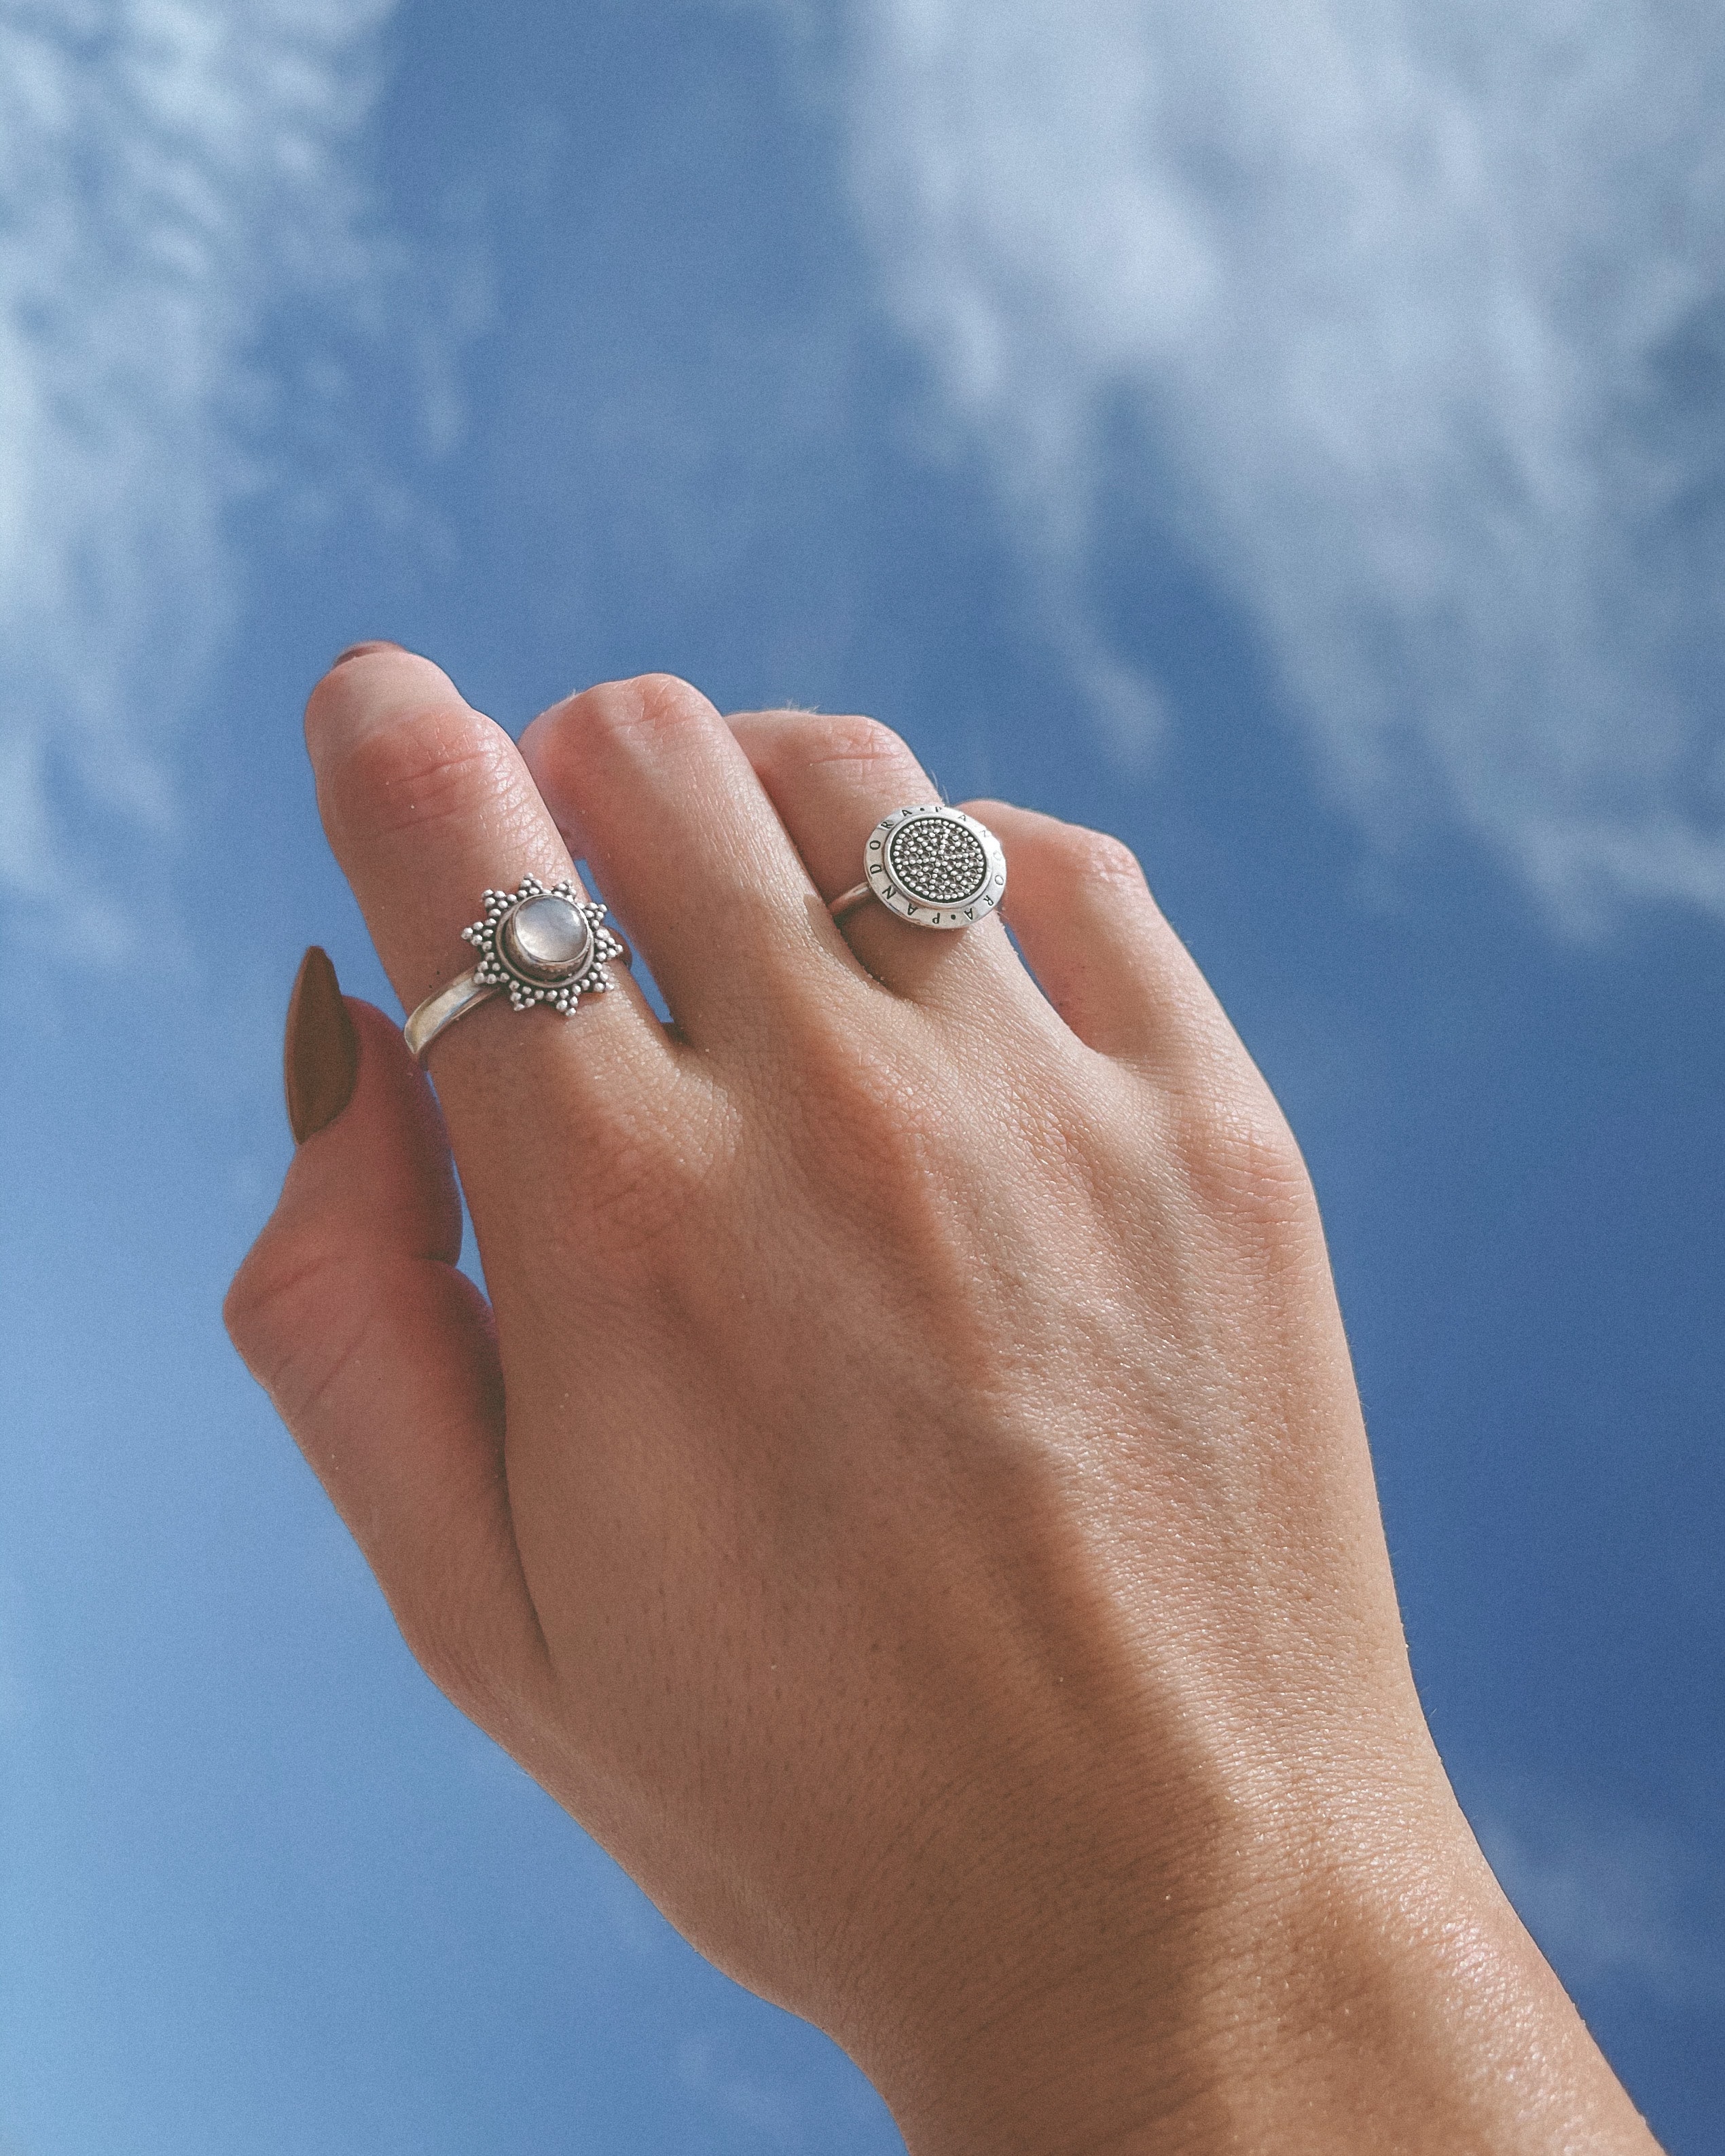 Fotografía de una mano en el aire con dos anillos de plata y de fondo un cielo azul